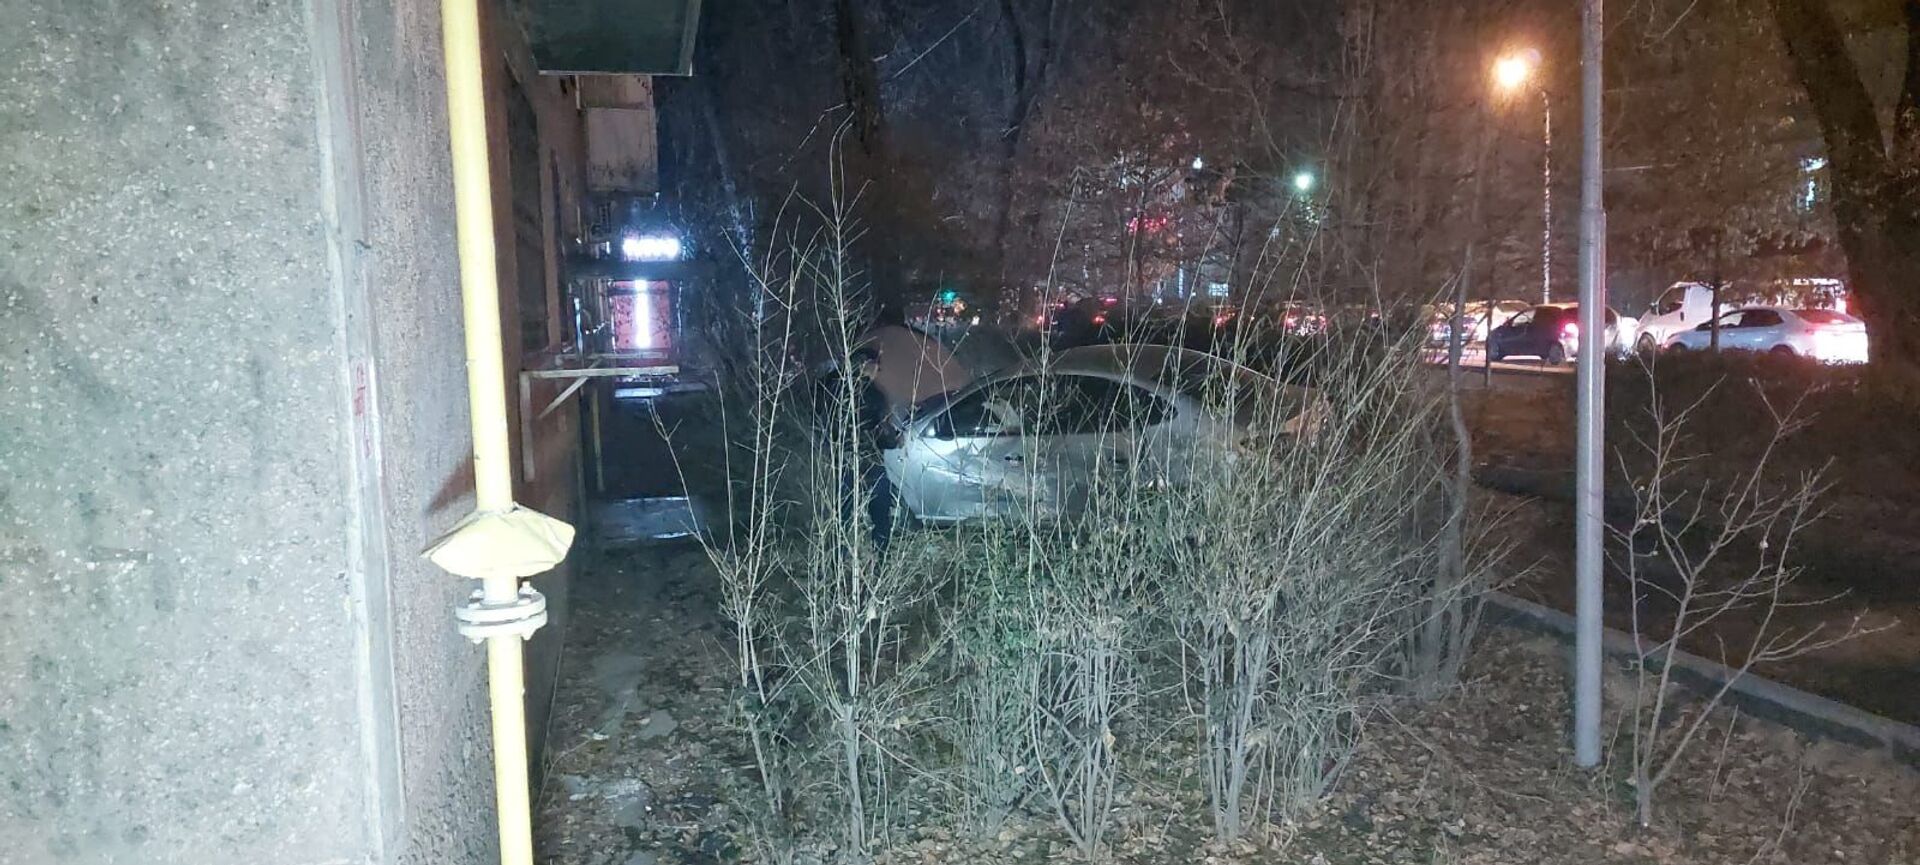 Автомобиль едва не влетел в подъезд многоэтажного дома в Алматы - Sputnik Казахстан, 1920, 30.11.2021